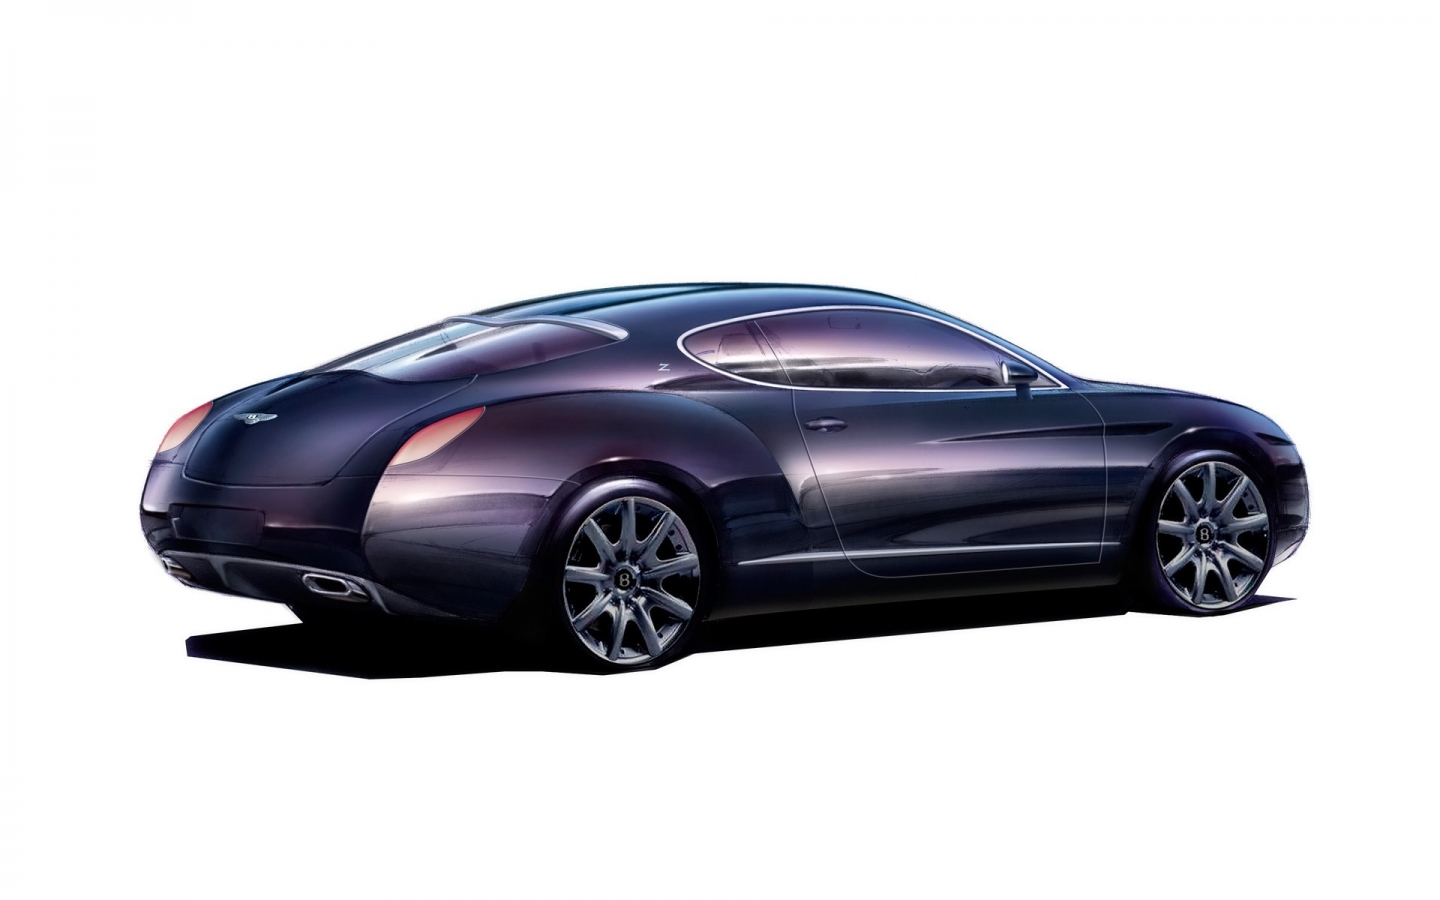 Bentley Zagato GTZ Sketch 2008 for 1440 x 900 widescreen resolution